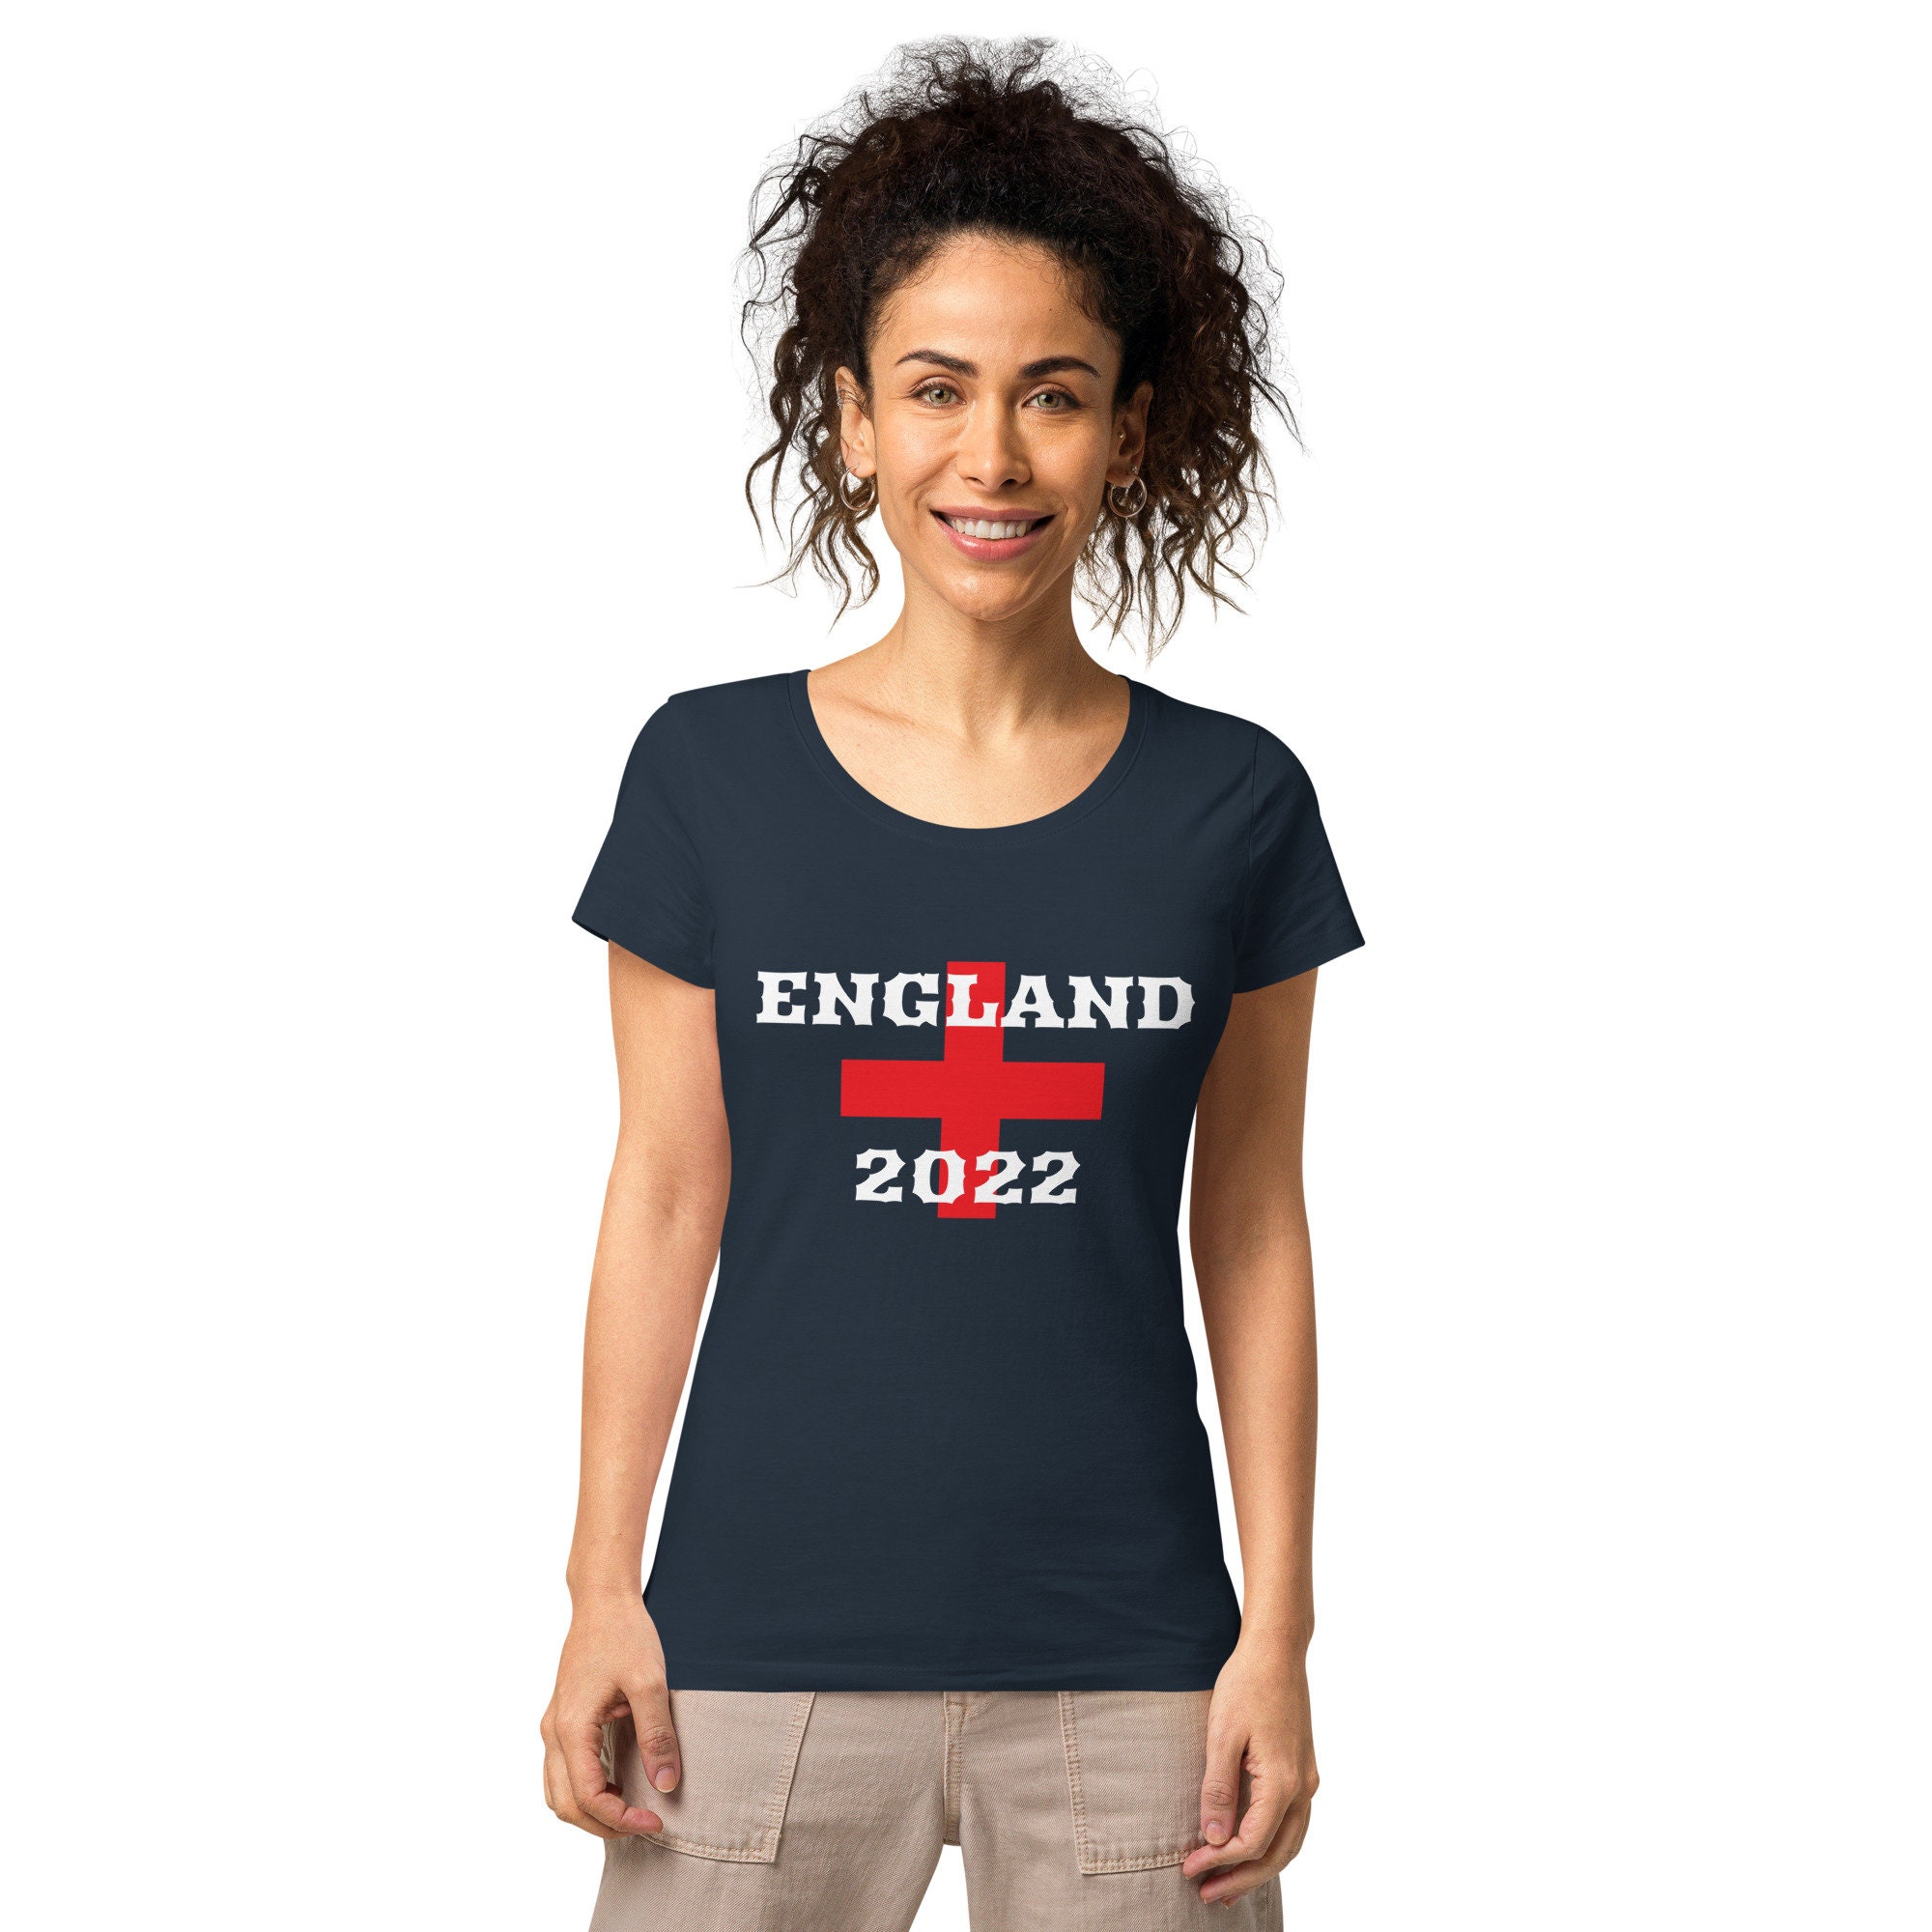 Discover England football 2022 t-shirt